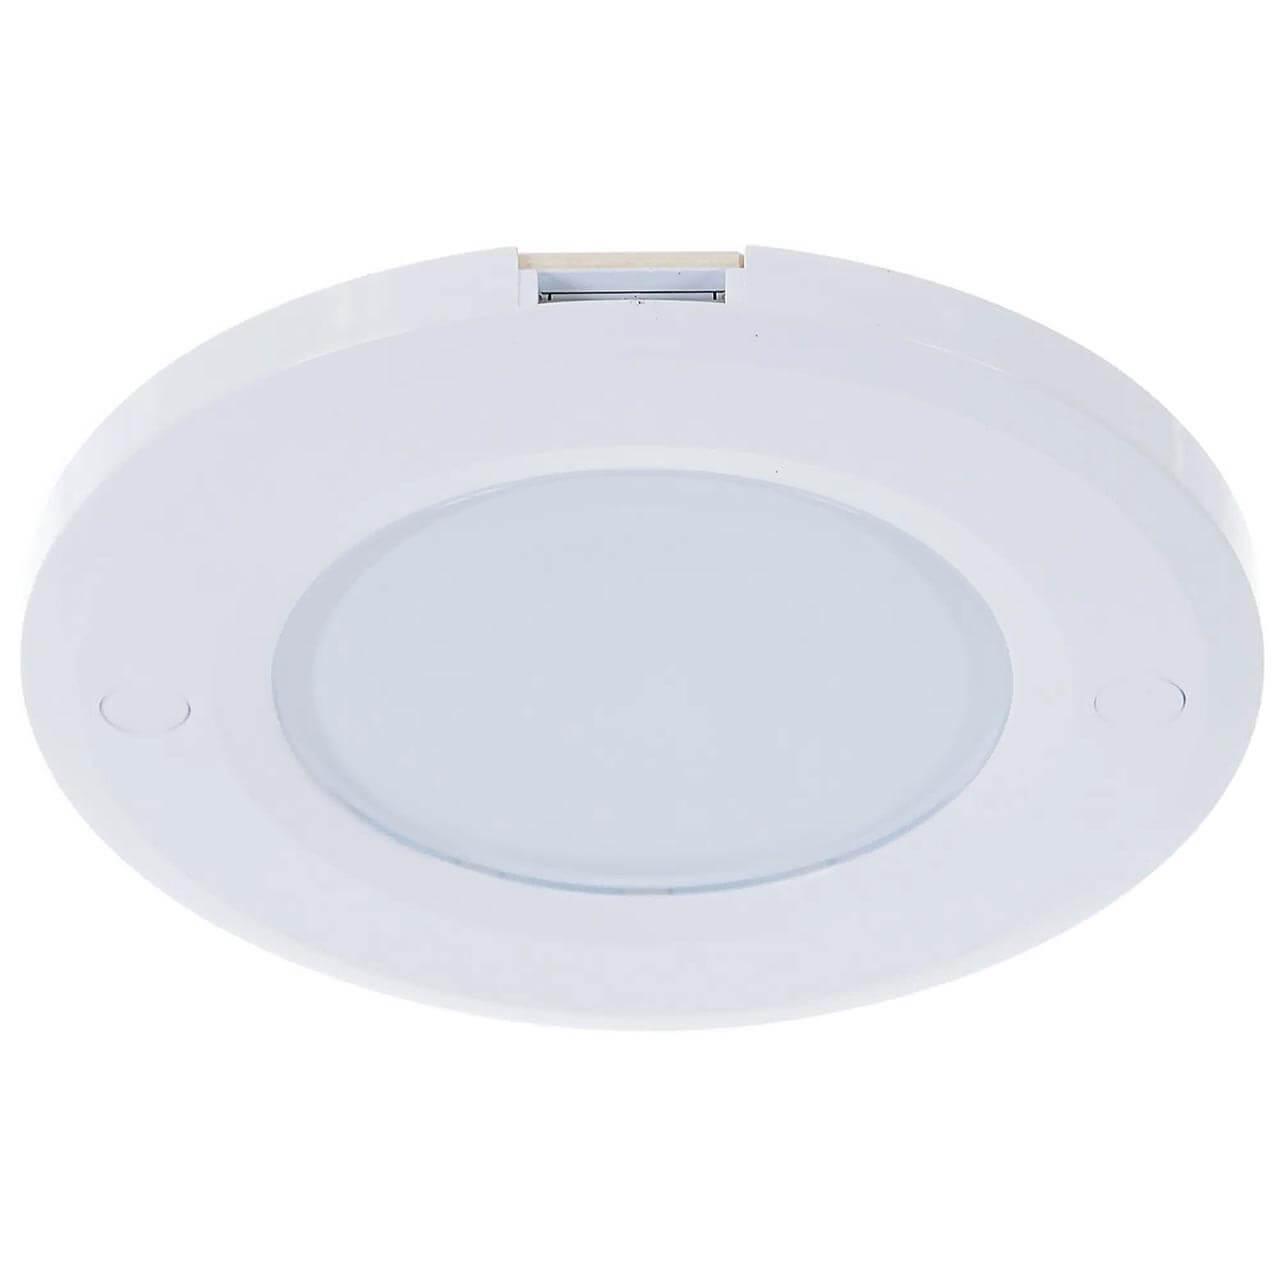 Мебельный светодиодный светильник Uniel ULM-F40-6W/4200K/Dim Sensor IP20 White UL-00002887 мебельный светодиодный светильник uniel ulm f43 0 9w 4200k sensor ip20 white ul 00003037